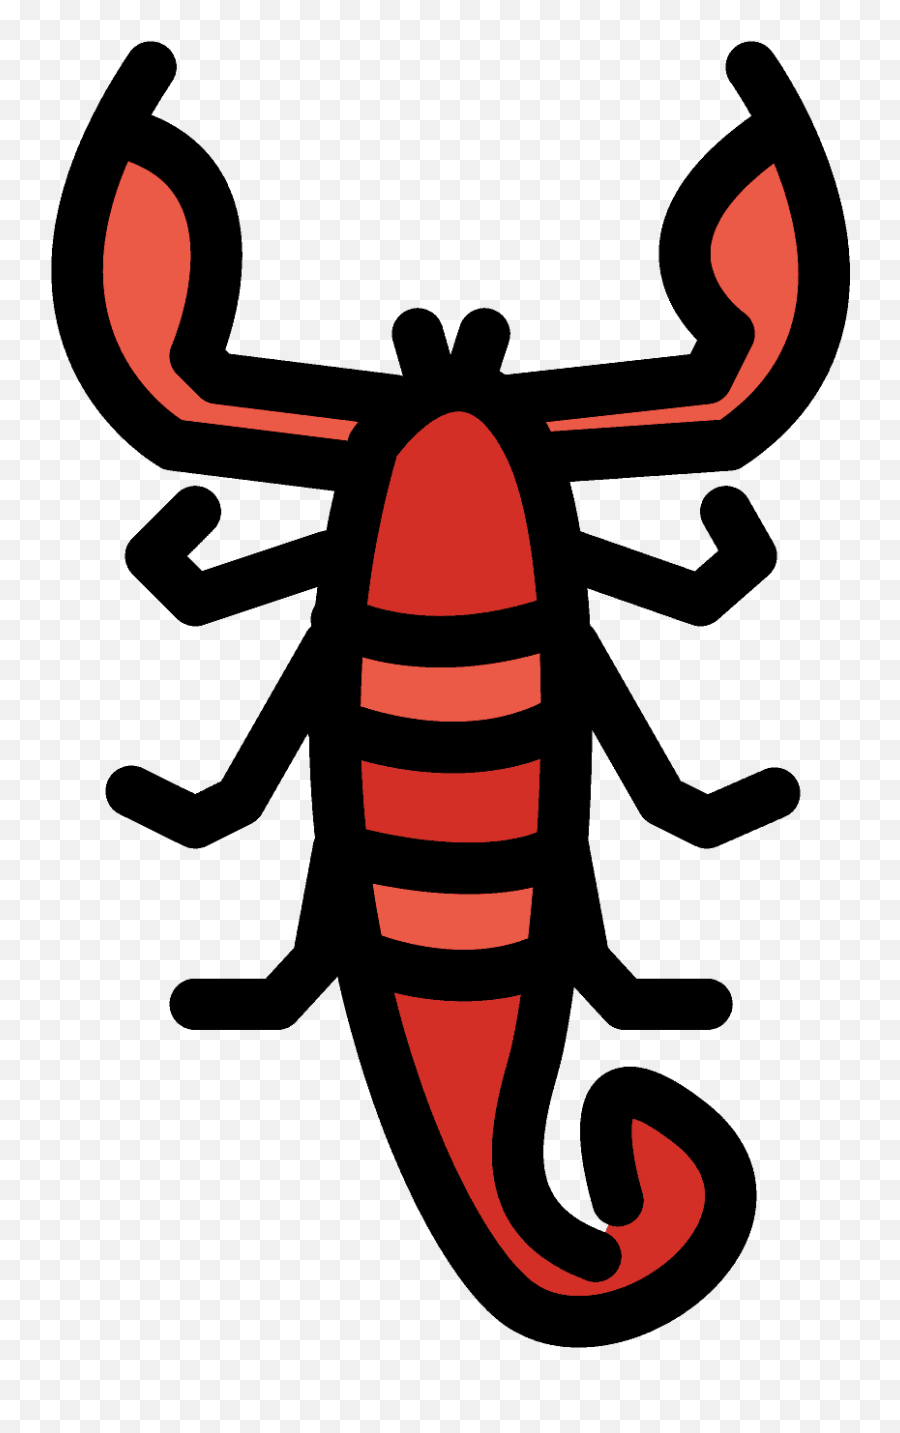 Scorpion Emoji Clipart Free Download Transparent Png - Imagen De Un Escorpión Animado,Emoticon Del Miquito